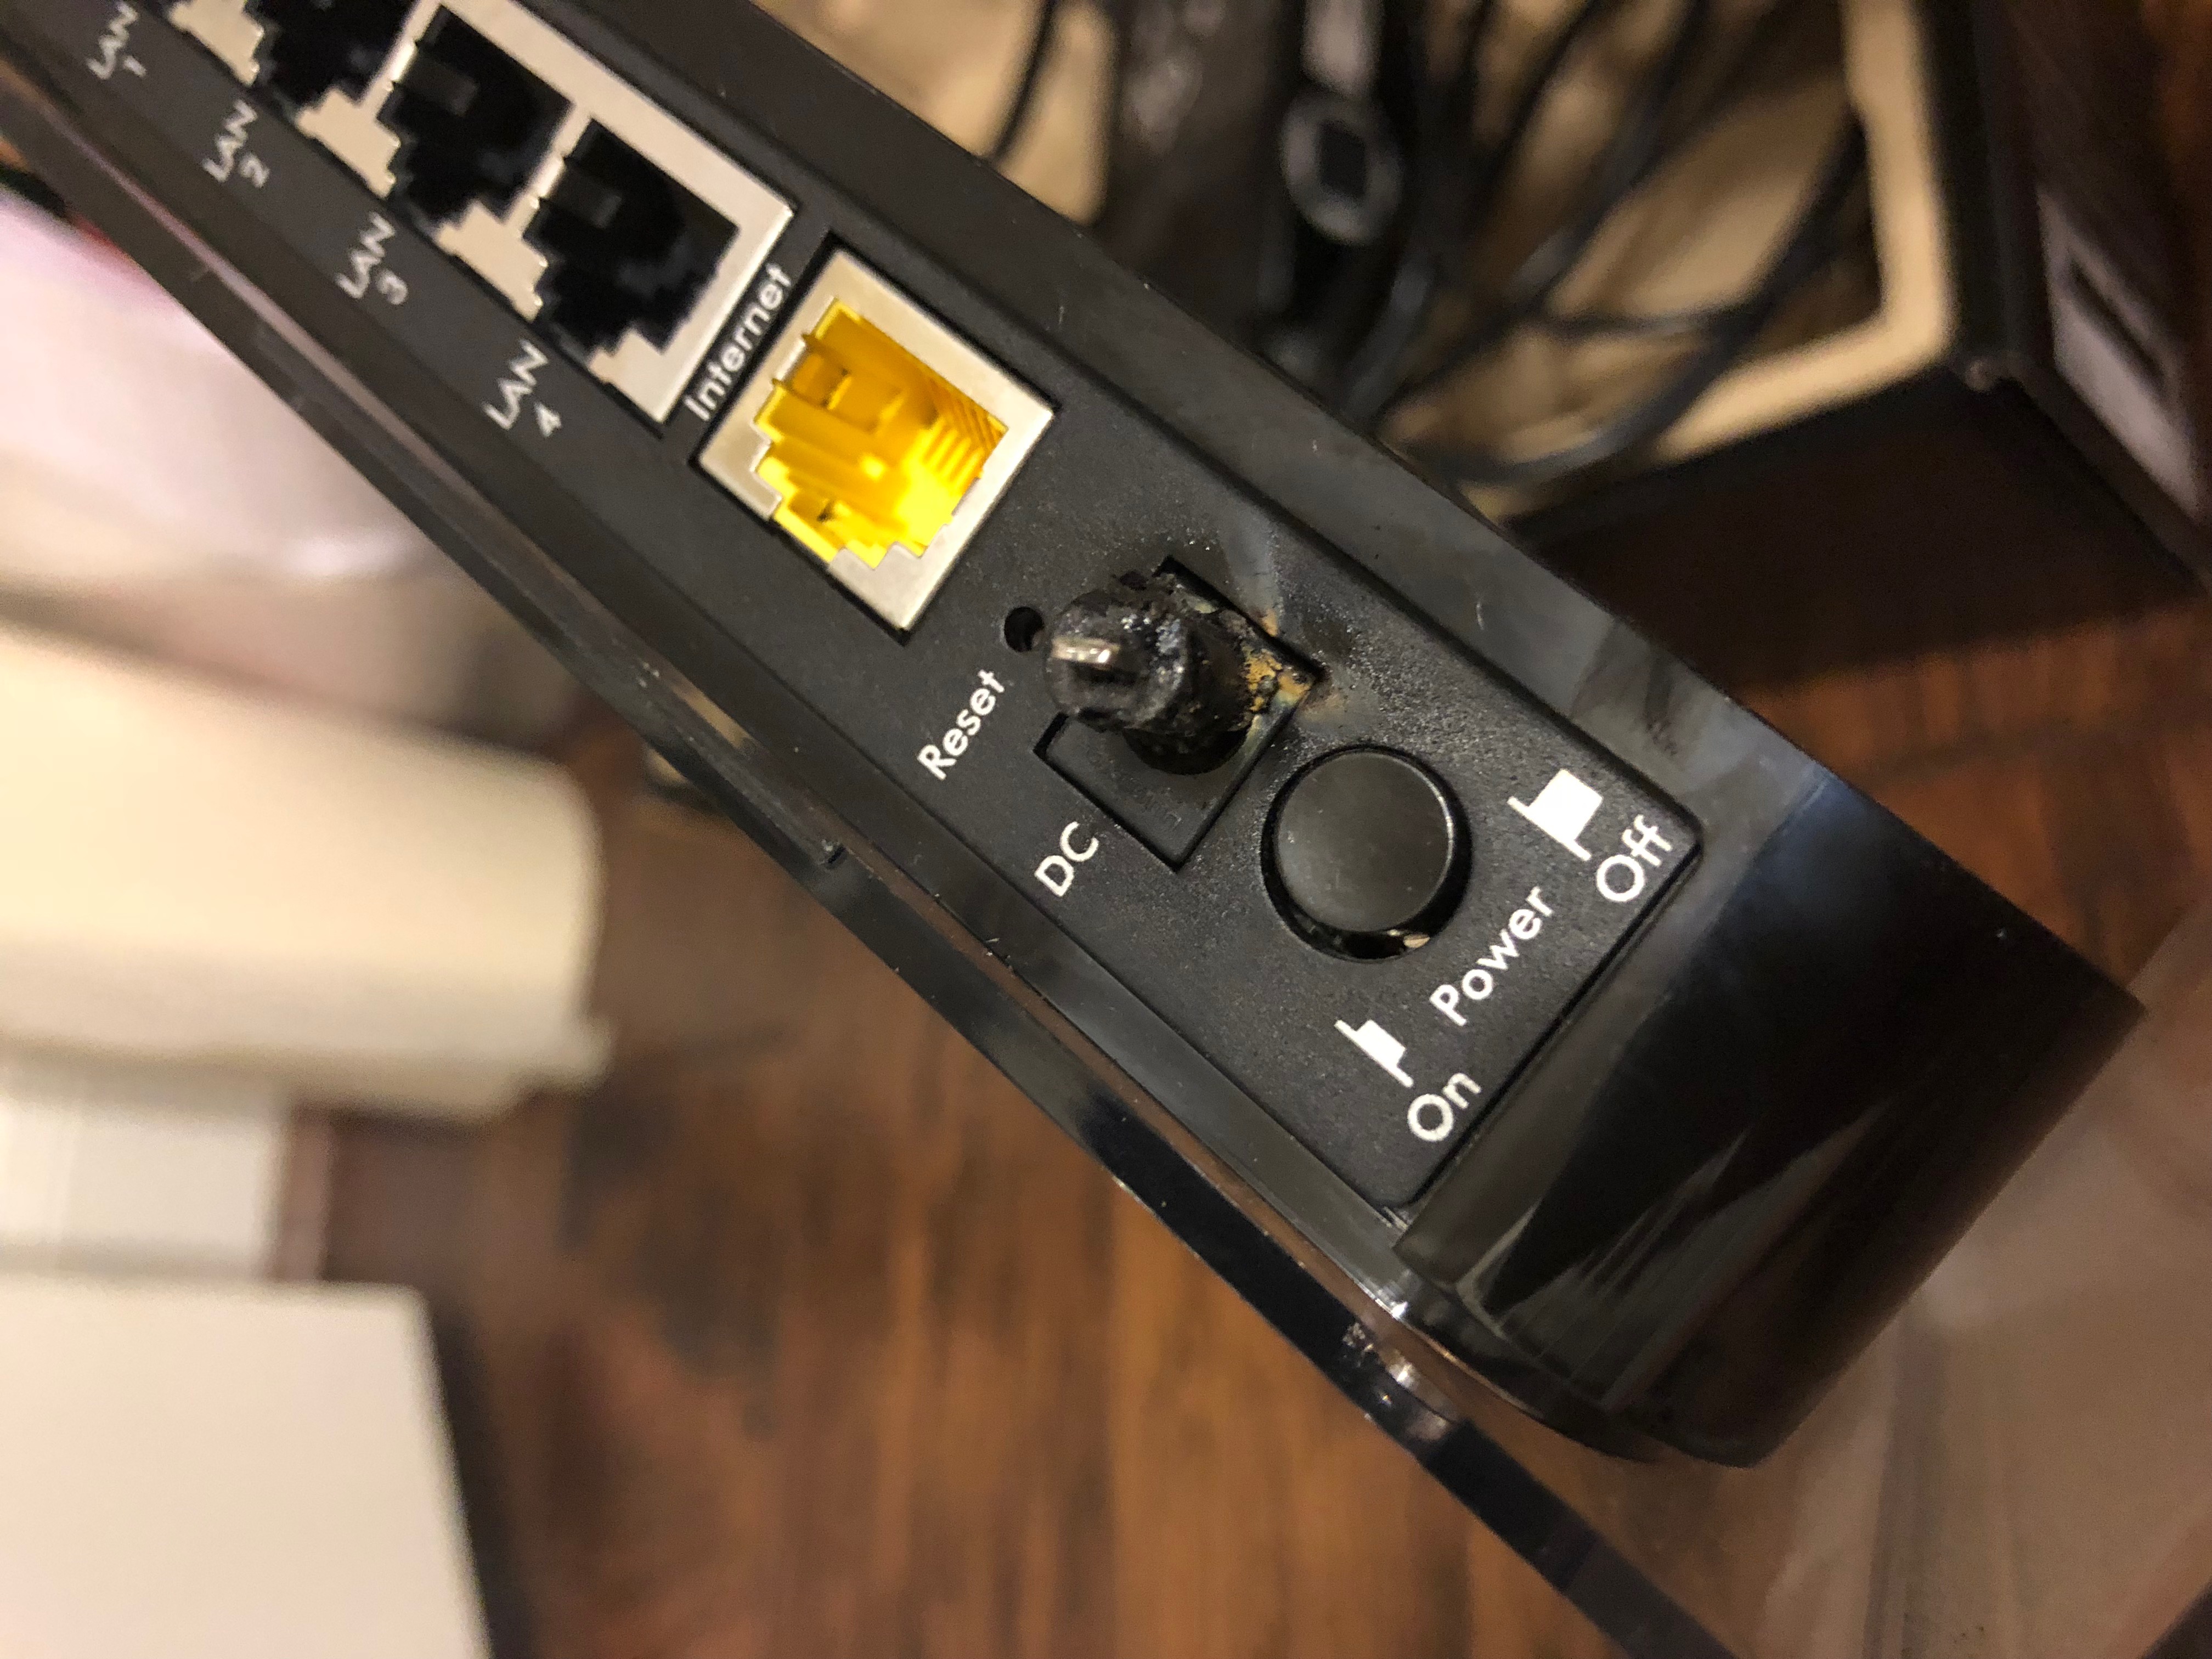 Wireless Router Caught on Fire - NETGEAR Communities